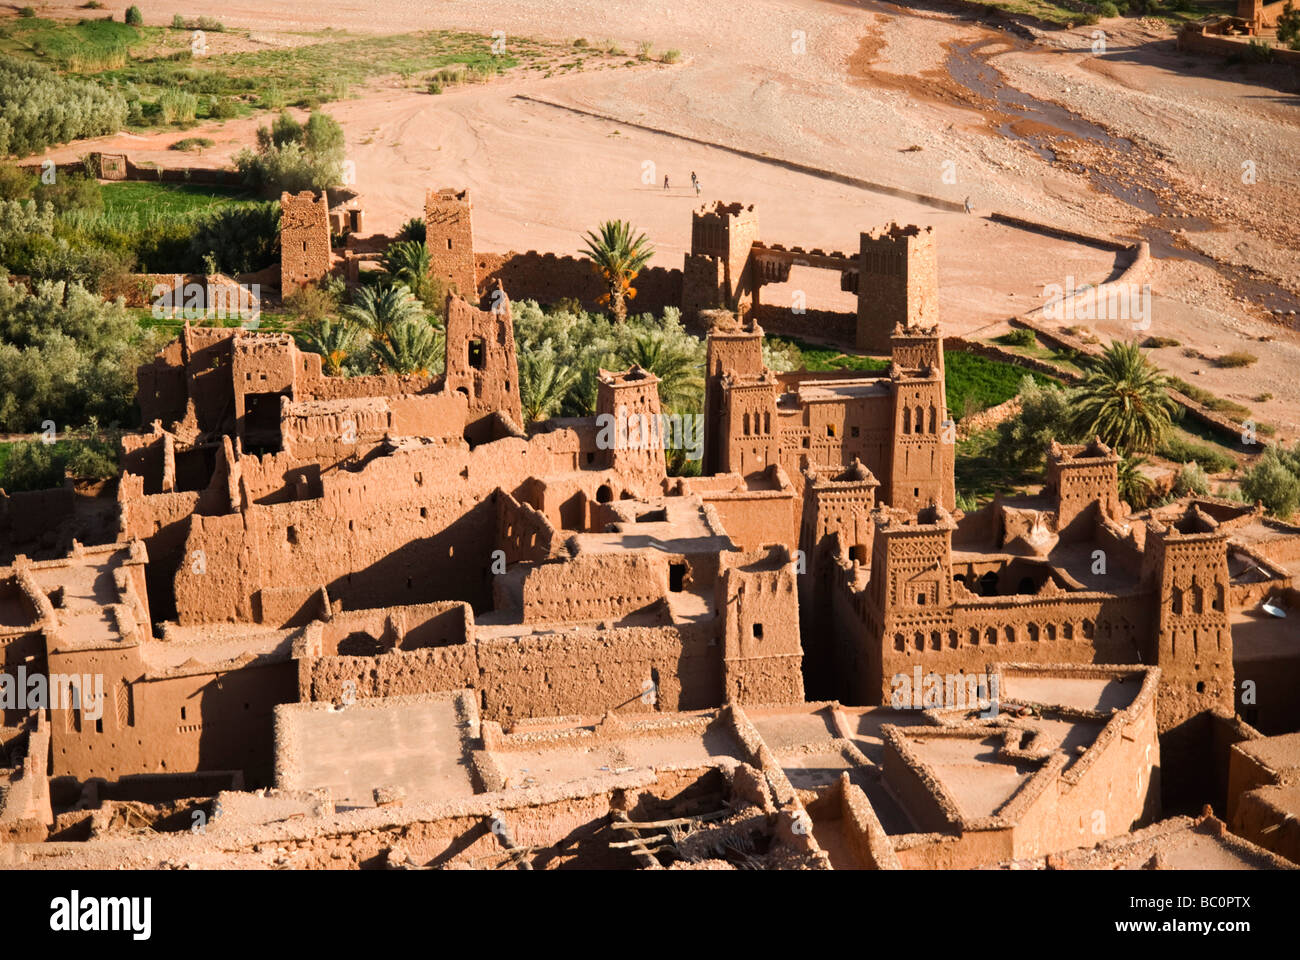 Le site du patrimoine mondial de l'Unesco d'Ait Ben Haddou au coucher du soleil du sud Maroc Afrique du Nord Banque D'Images